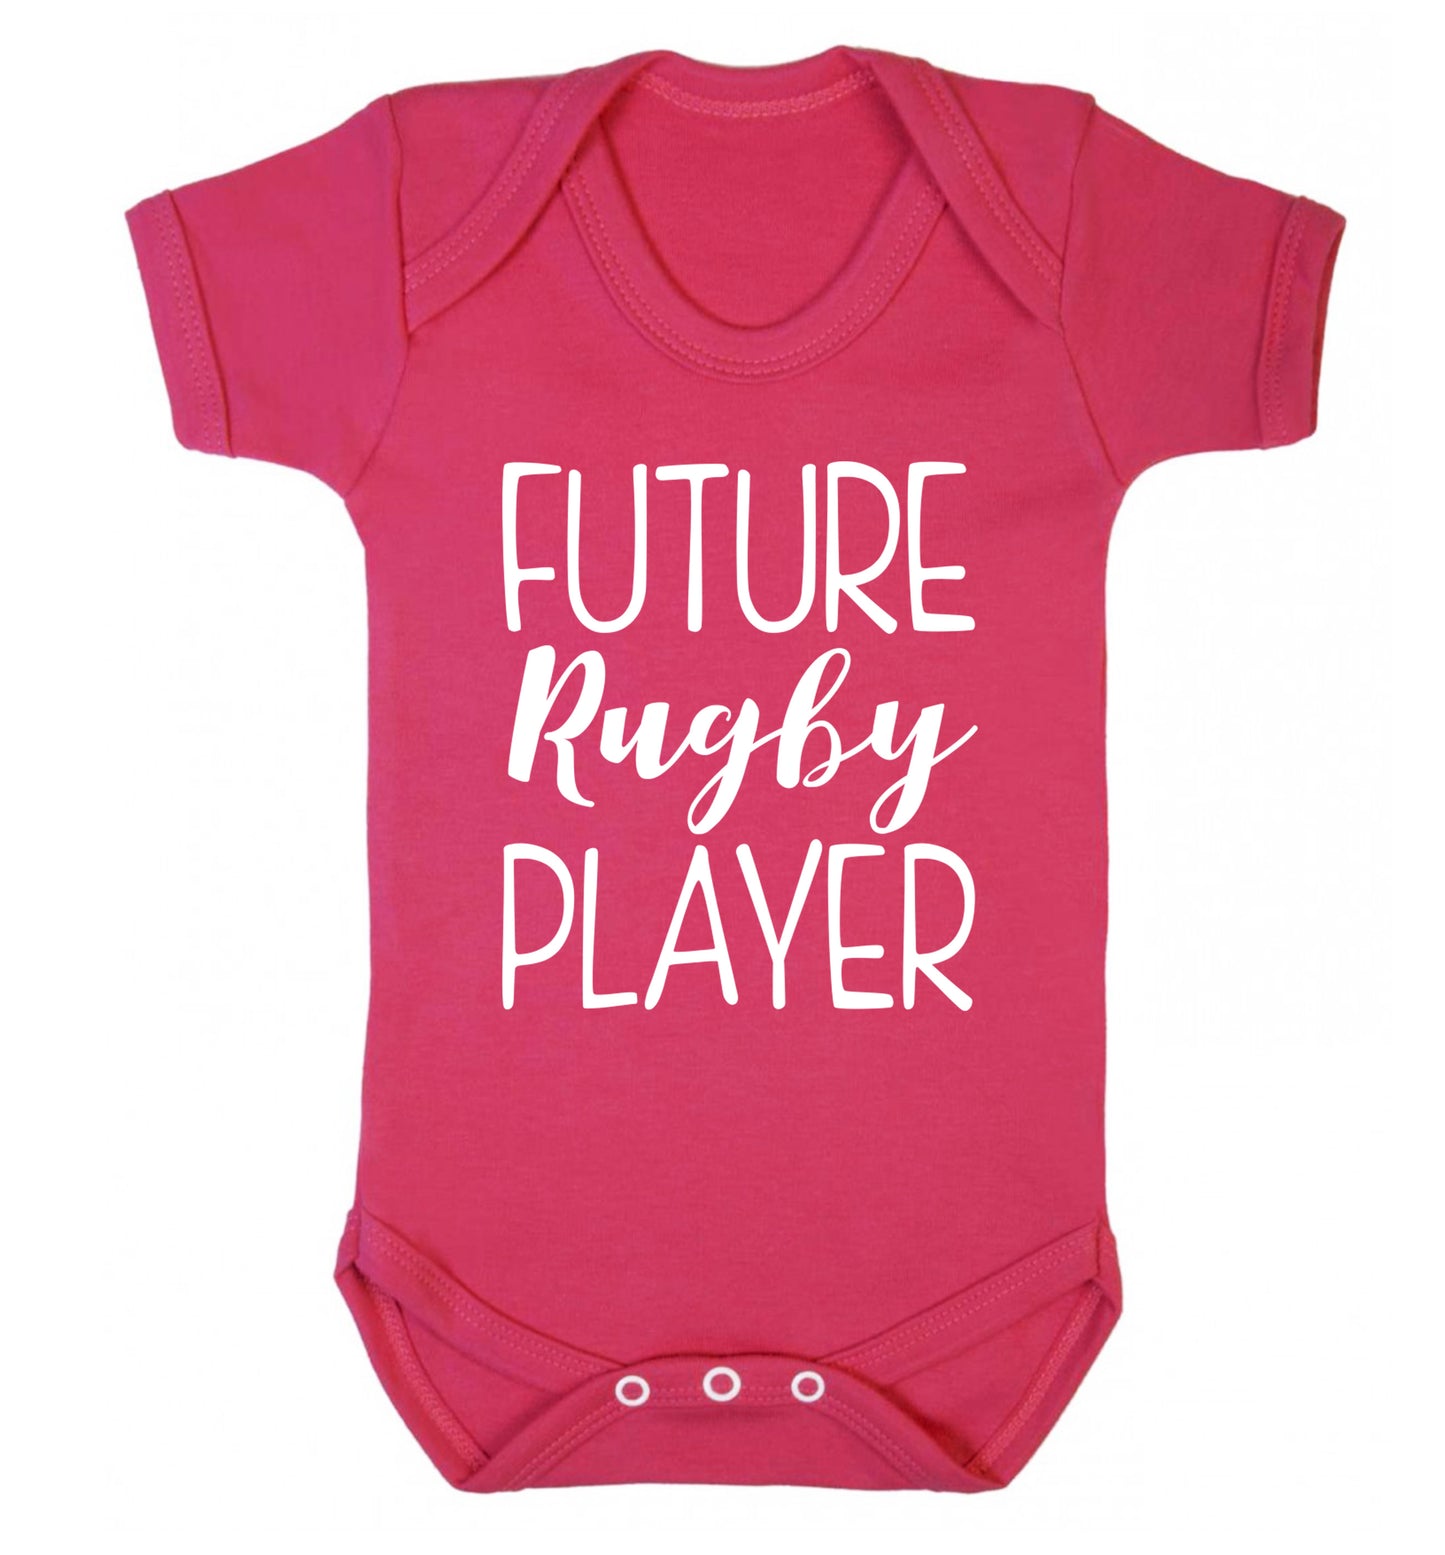 Future rugby player Baby Vest dark pink 18-24 months